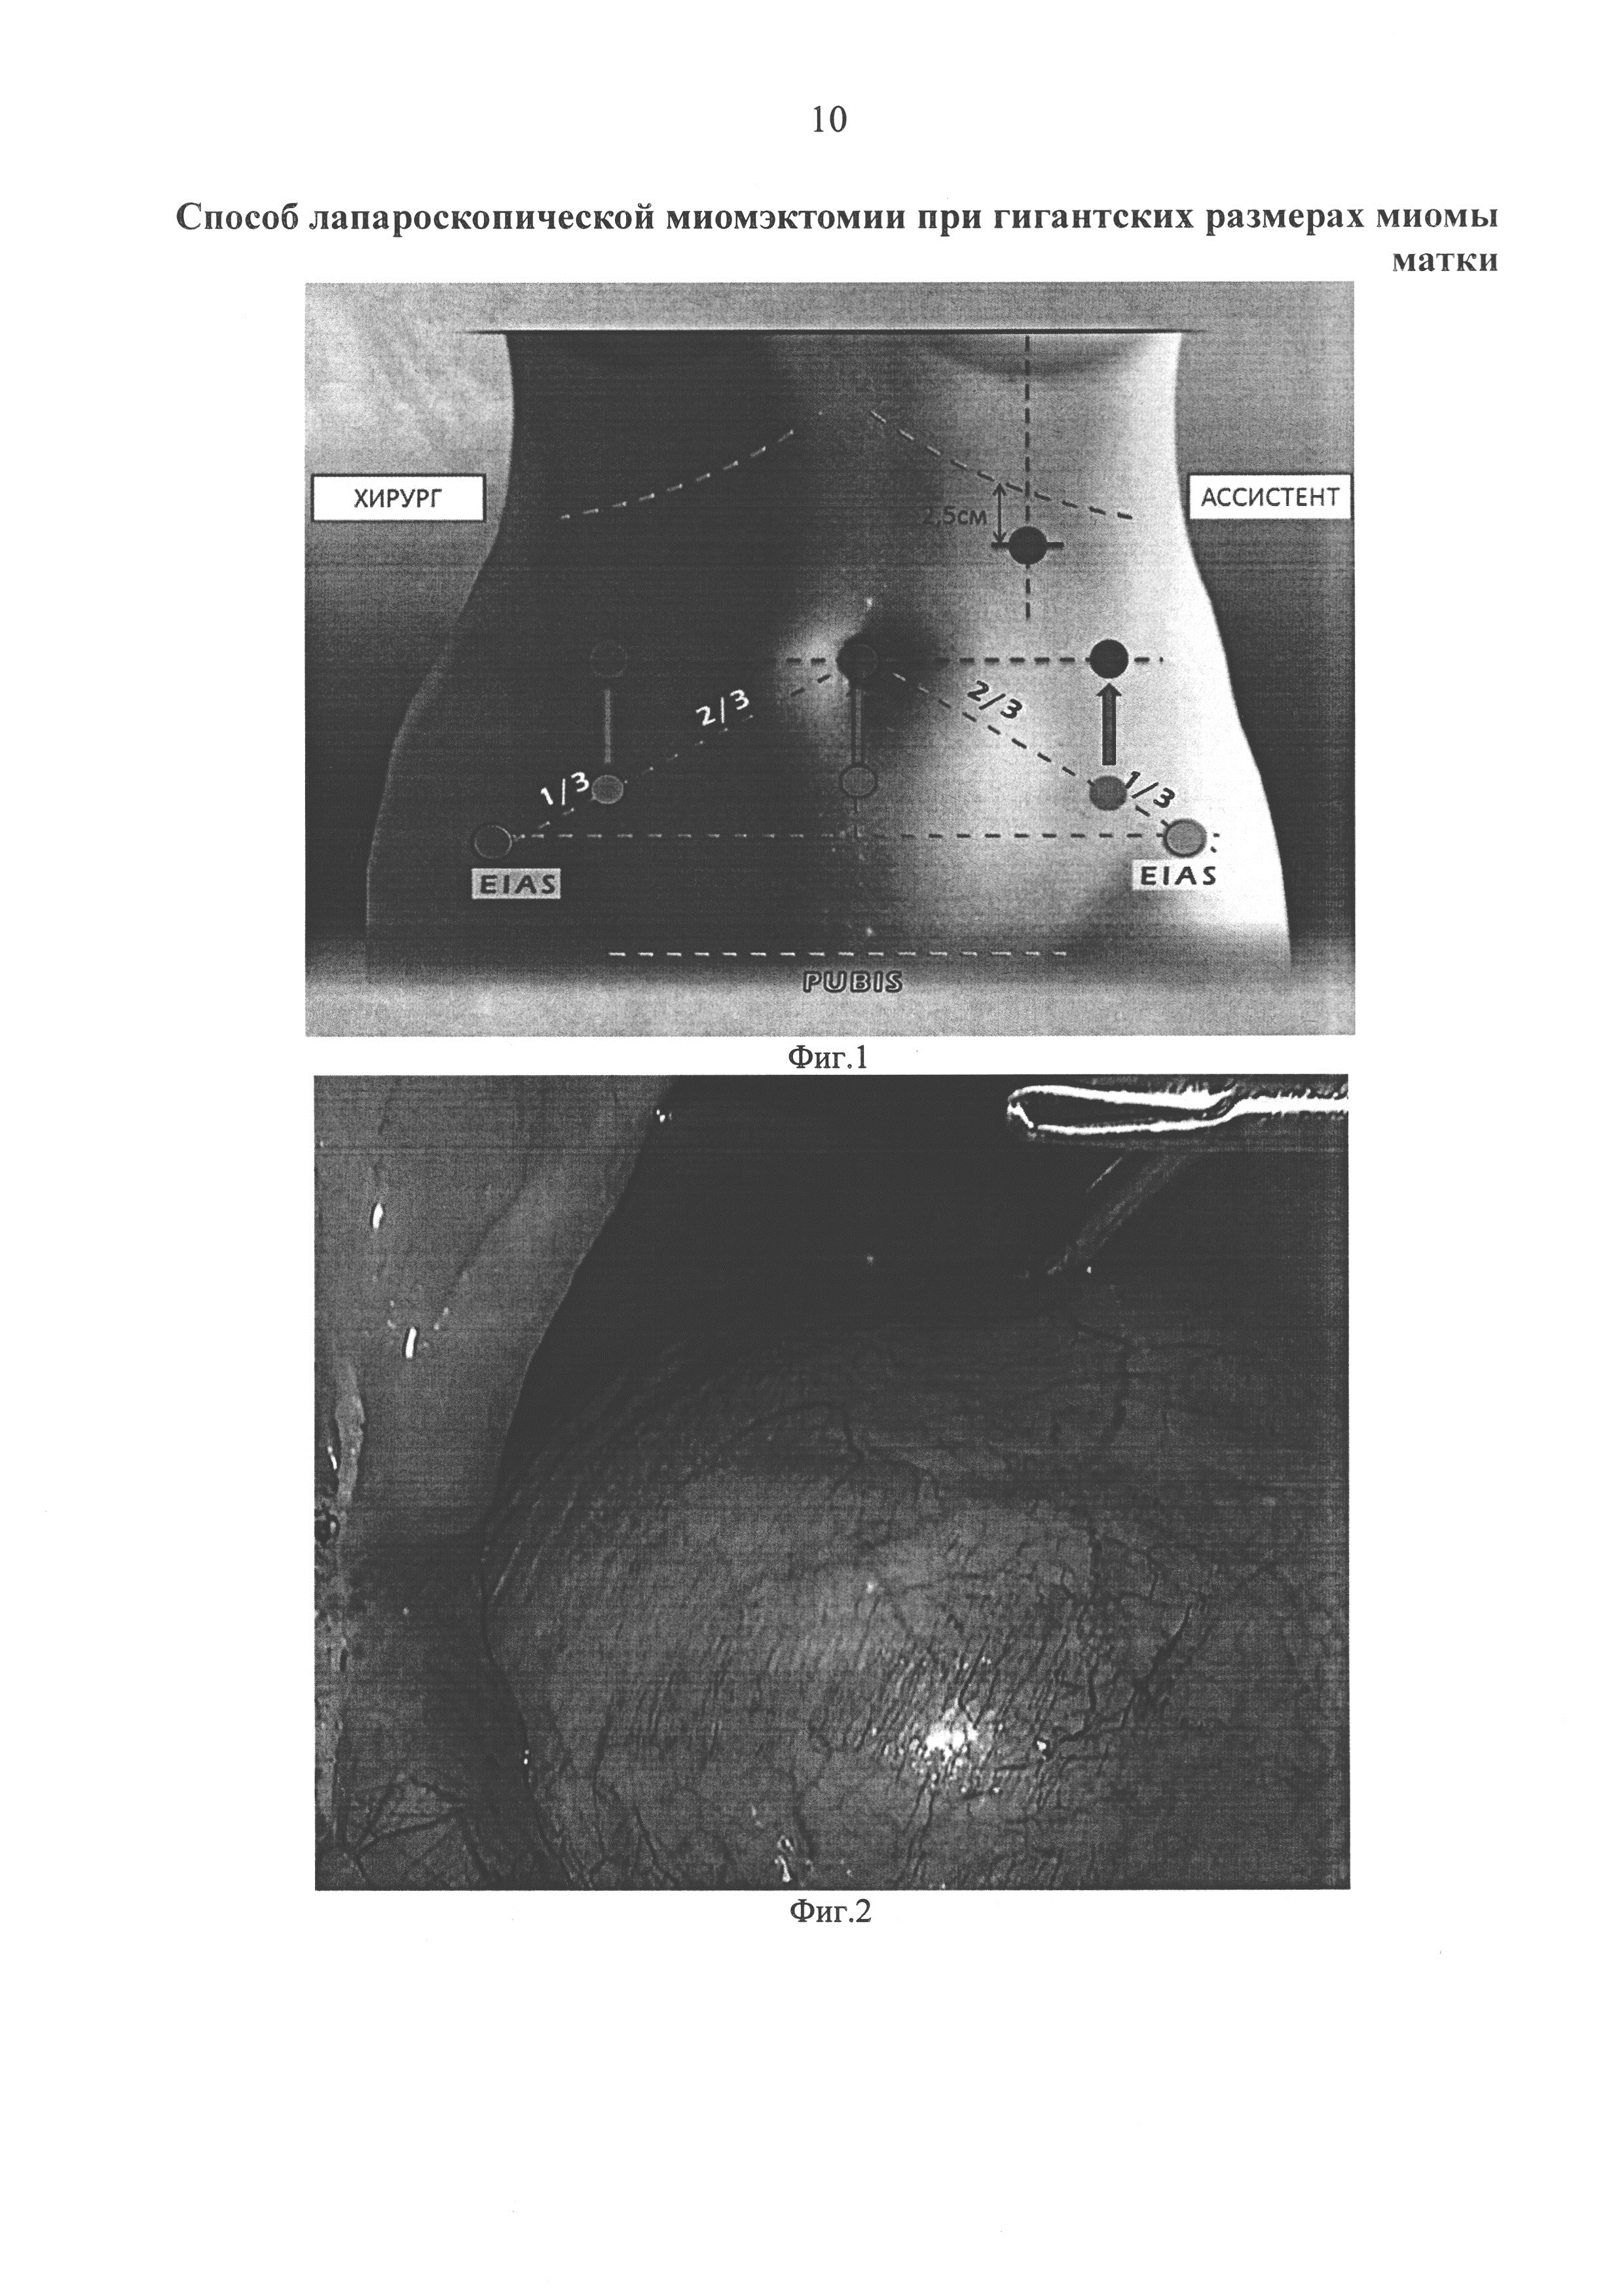 Способ лапароскопической миомэктомии при гигантских размерах миомы матки